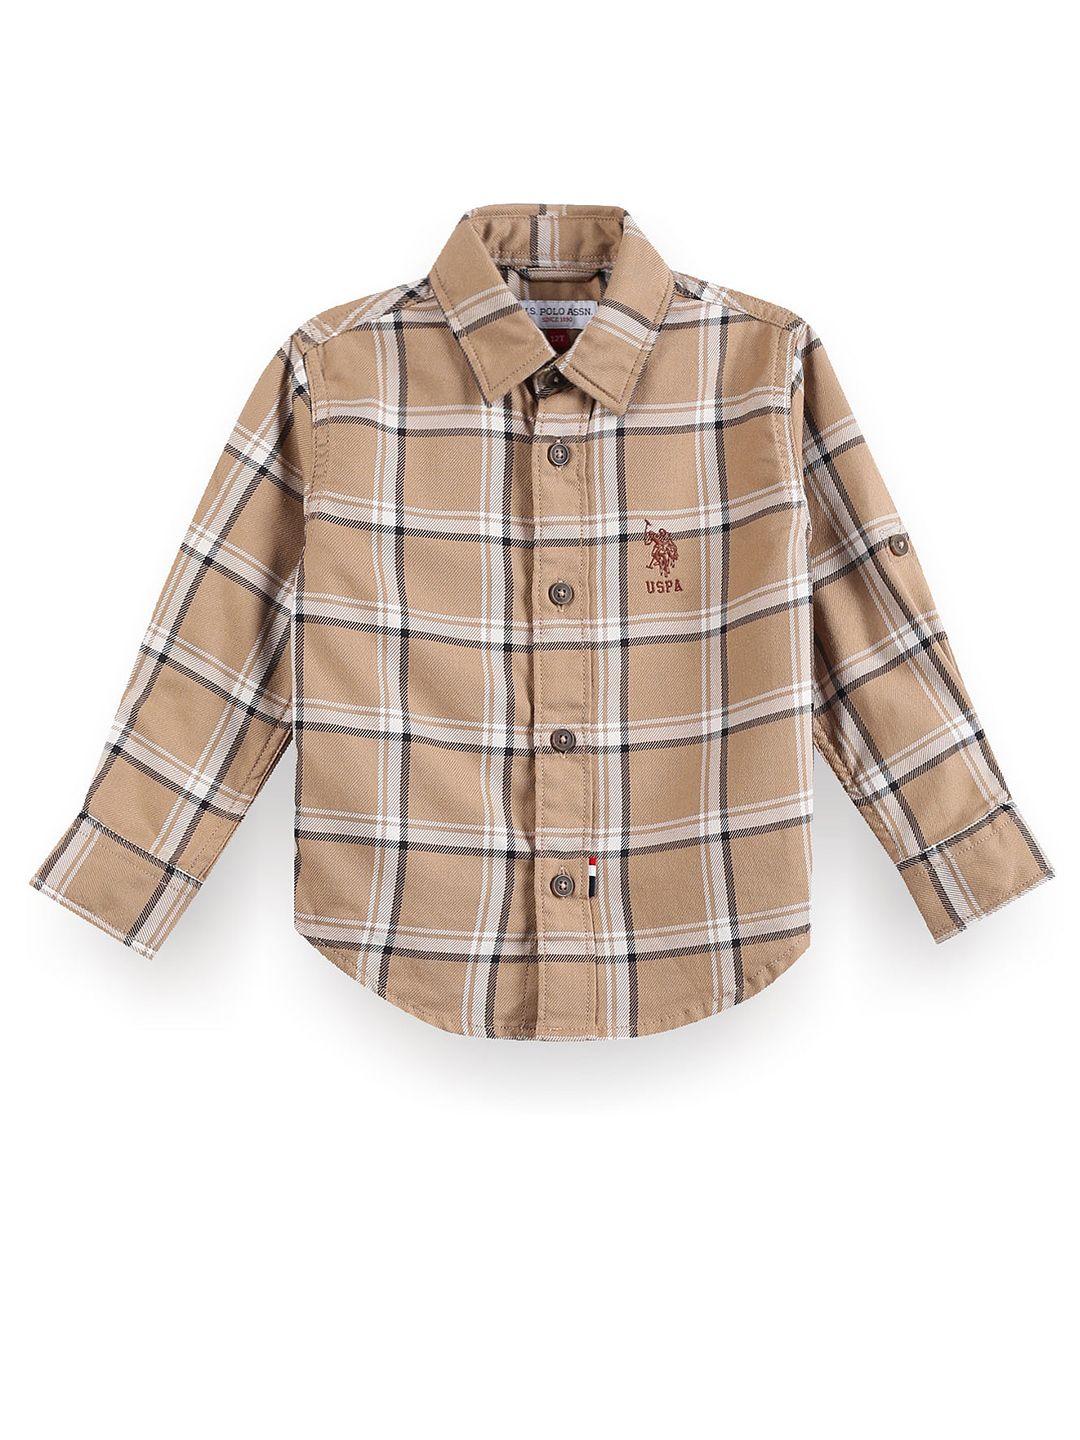 U.S. Polo Assn. Kids Boys Classic Tartan Checks Spread Collar Cotton Casual Shirt